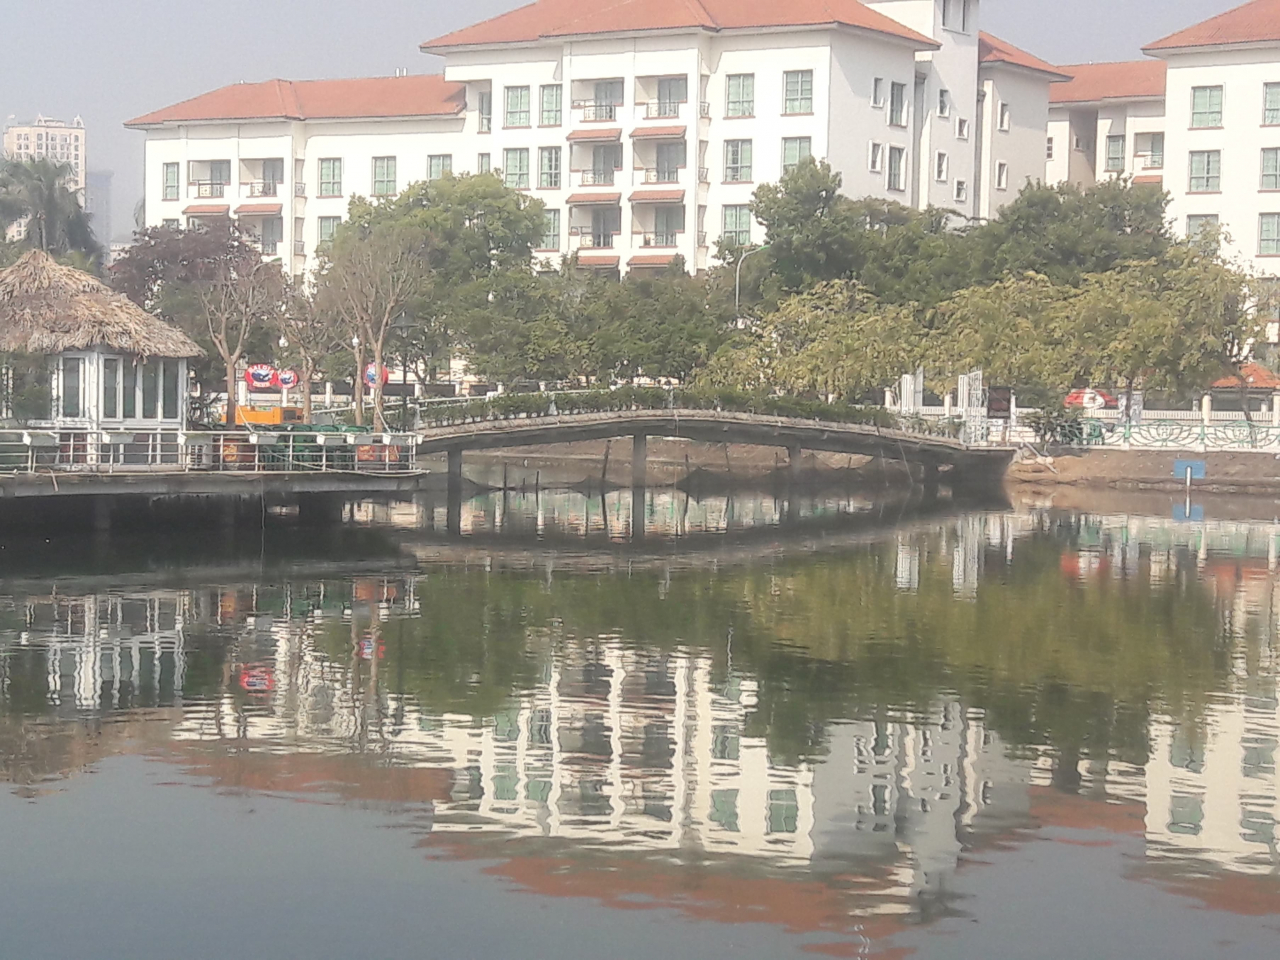 Quán bia Hải Gia vẫn hoạt động công khai ngay trên ao Thủy Sứ thuộc địa phận phường Quảng An (Tây Hồ) bất chấp mọi chỉ đạo.